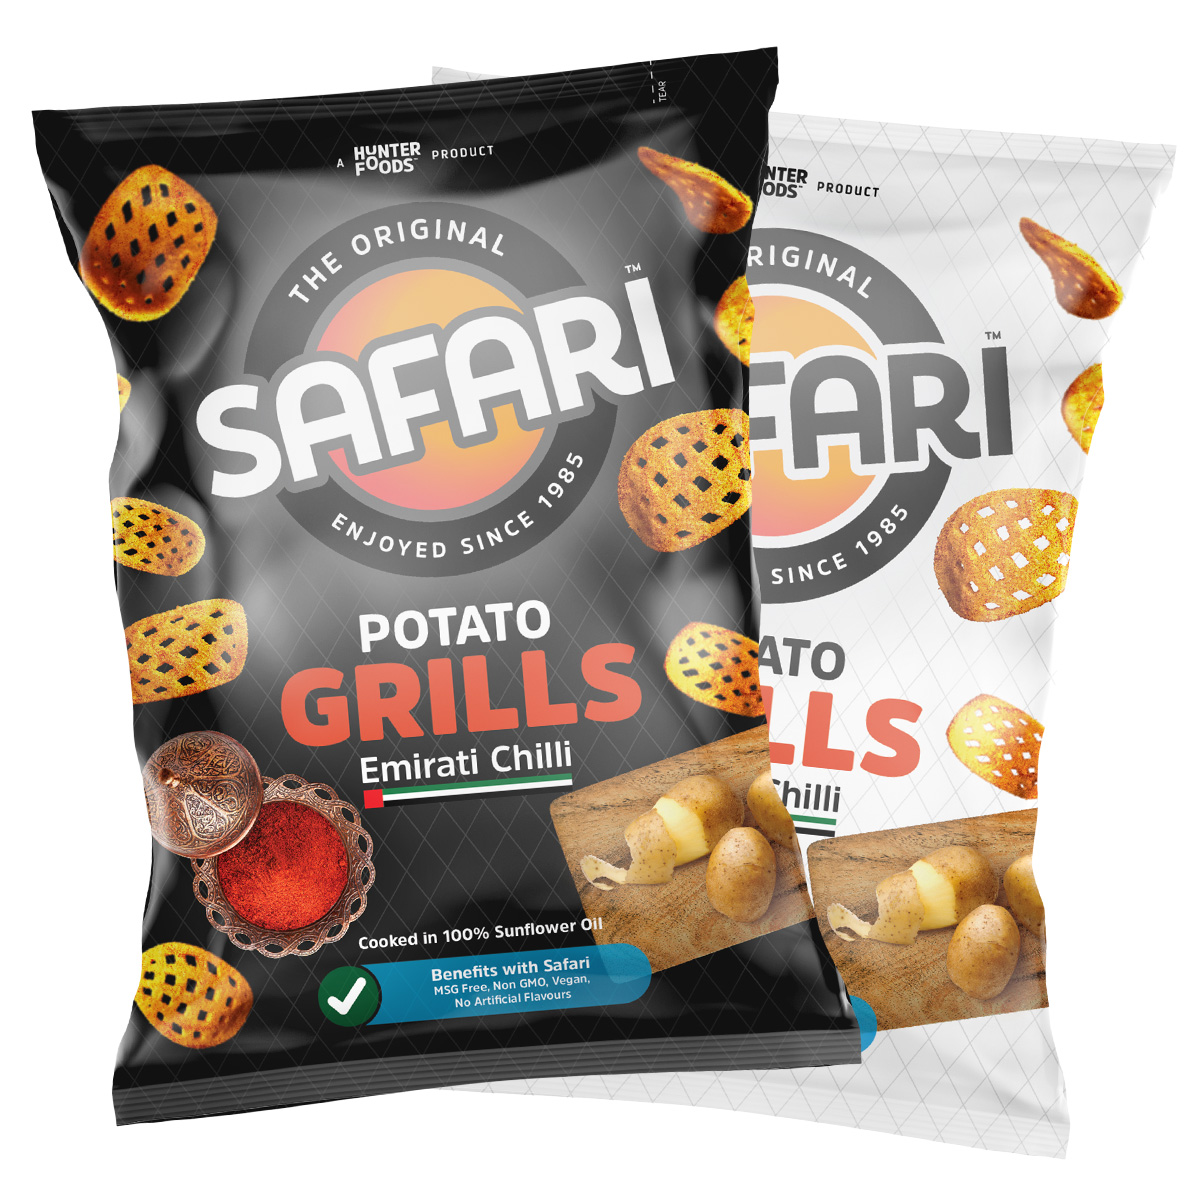 Safari Potato Grills – Emirati Chilli (60gm)